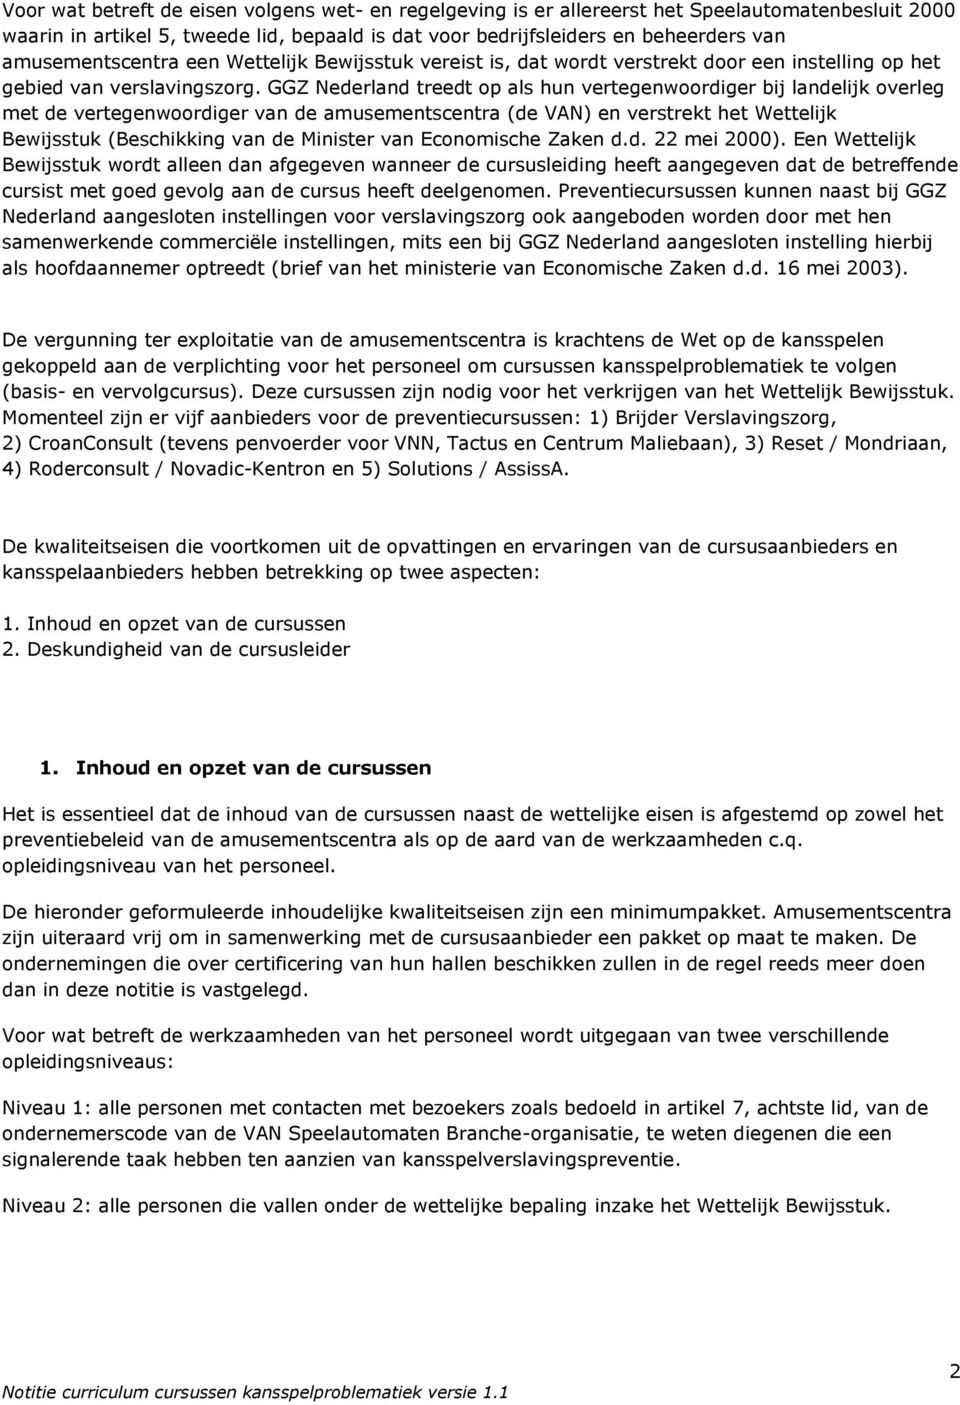 GGZ Nederland treedt op als hun vertegenwoordiger bij landelijk overleg met de vertegenwoordiger van de amusementscentra (de VAN) en verstrekt het Wettelijk Bewijsstuk (Beschikking van de Minister